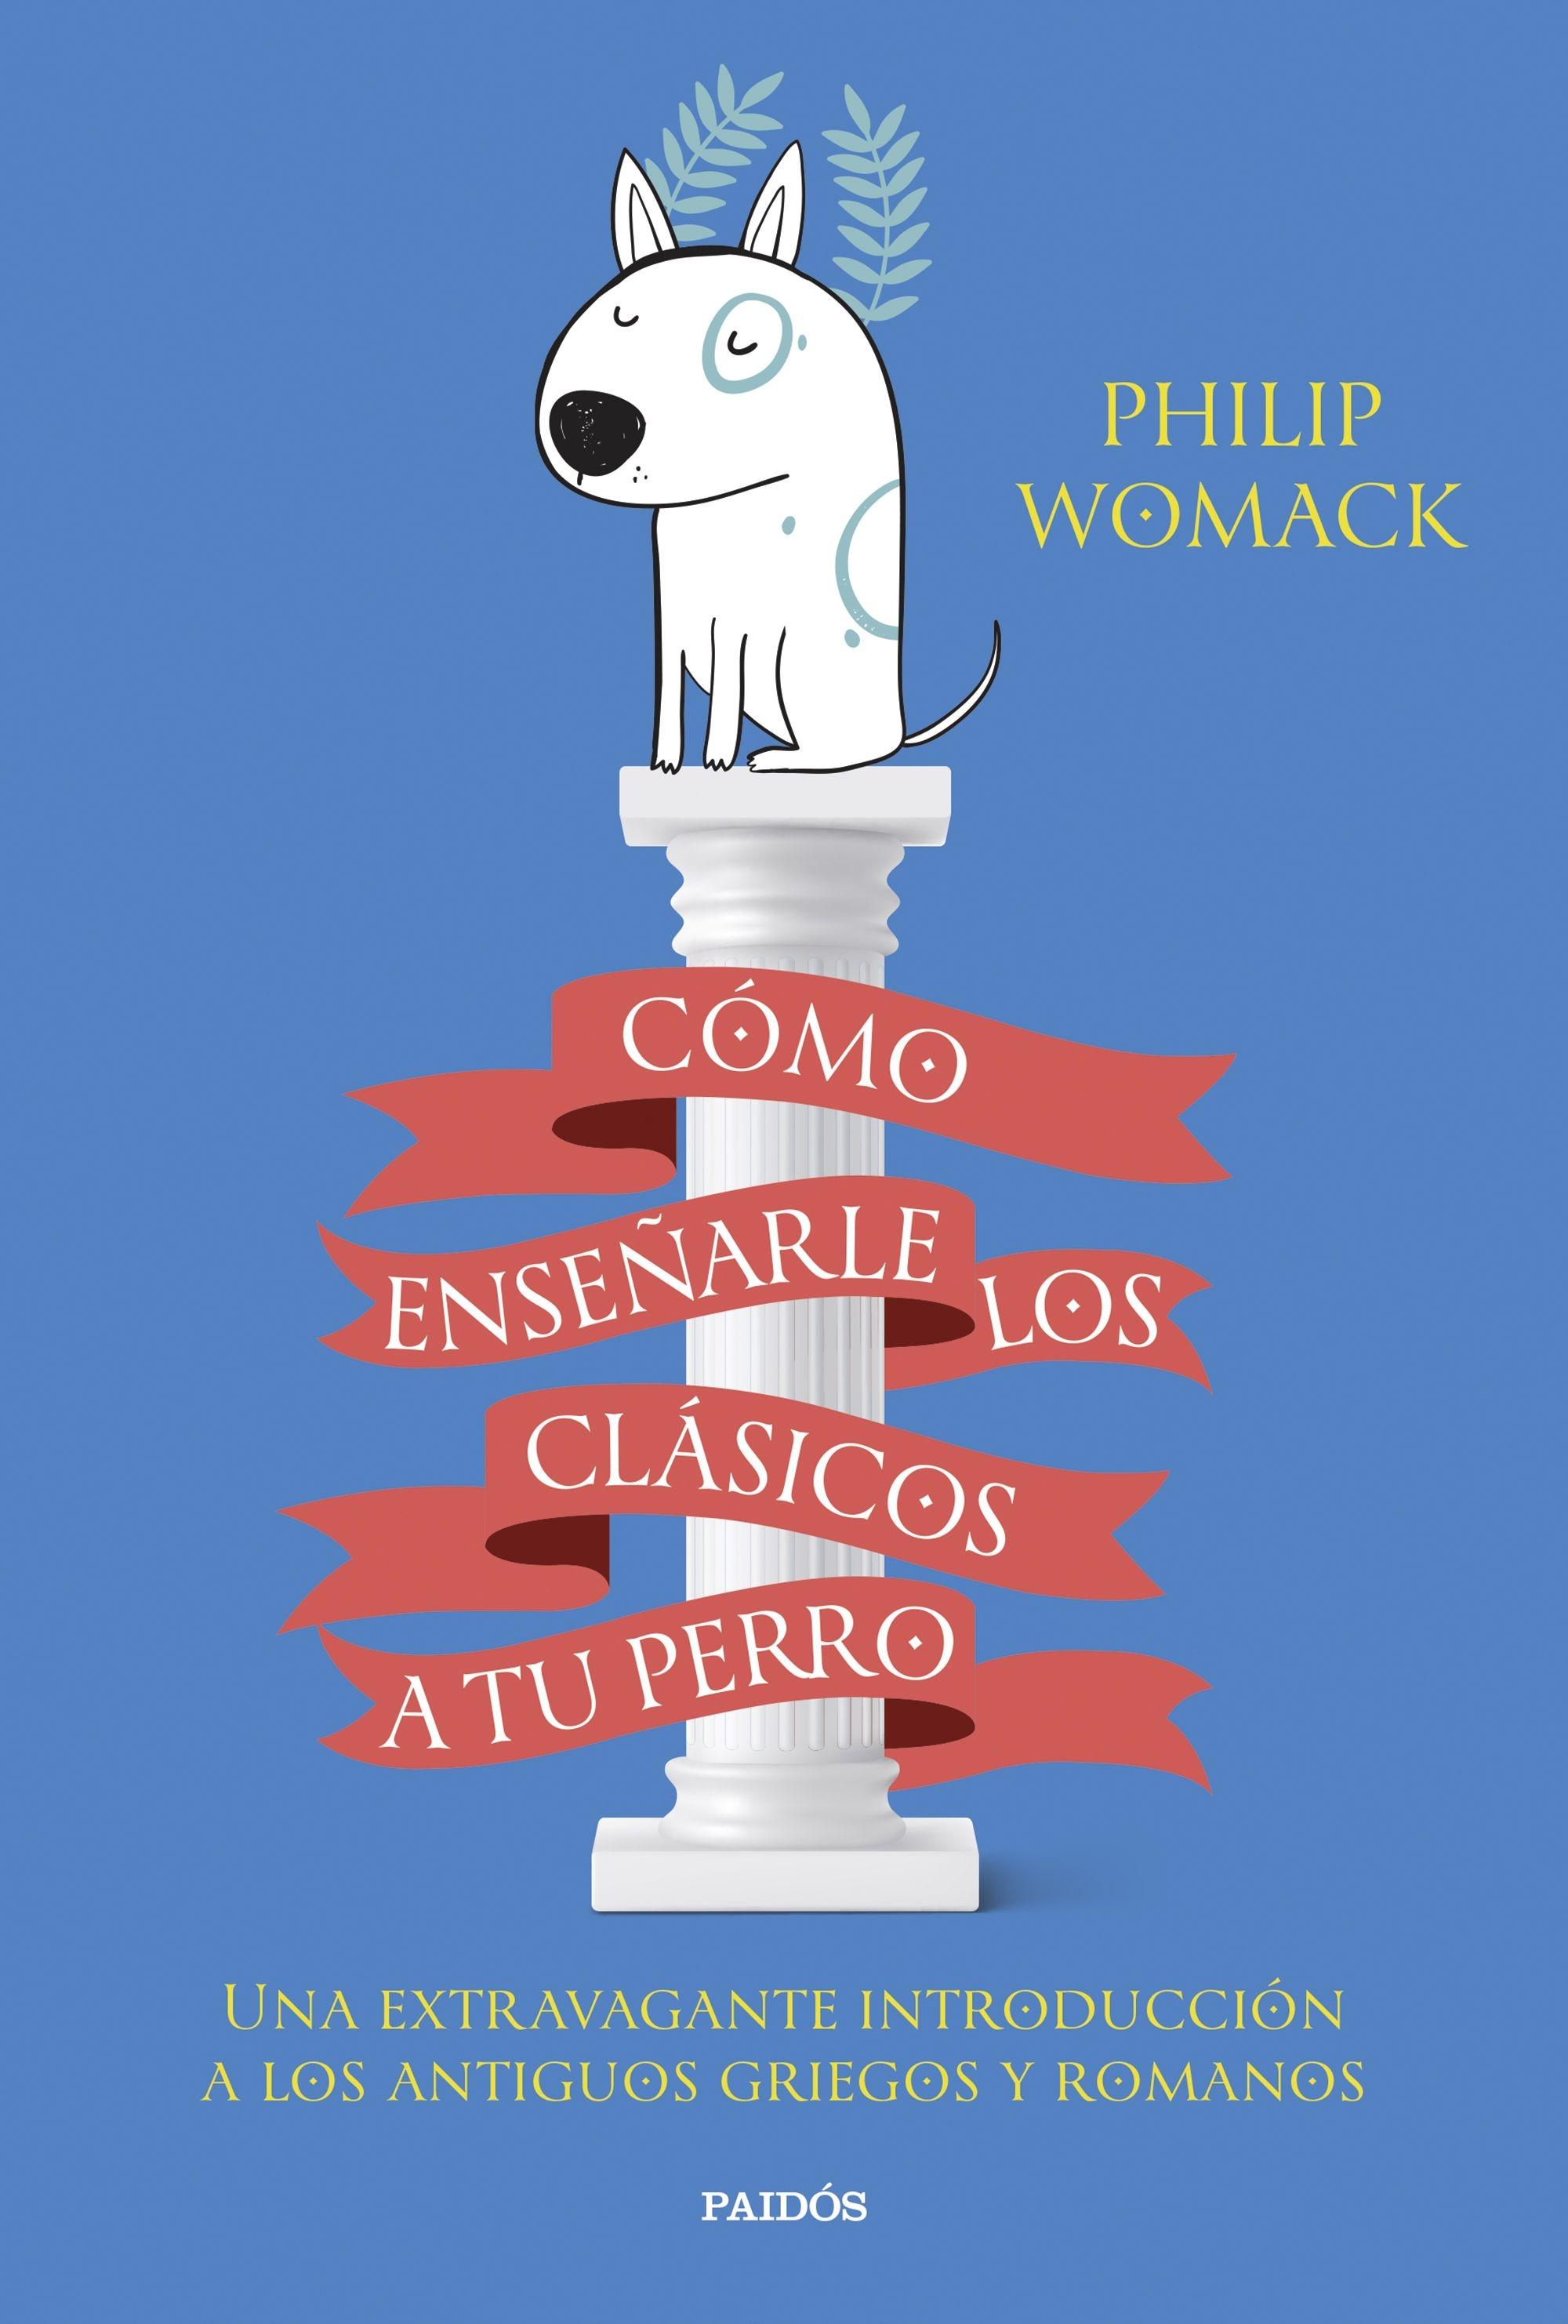 Cómo Enseñarle los Clásicos a tu Perro "Una Extravagante Introducción a los Antiguos Griegos y Romanos"